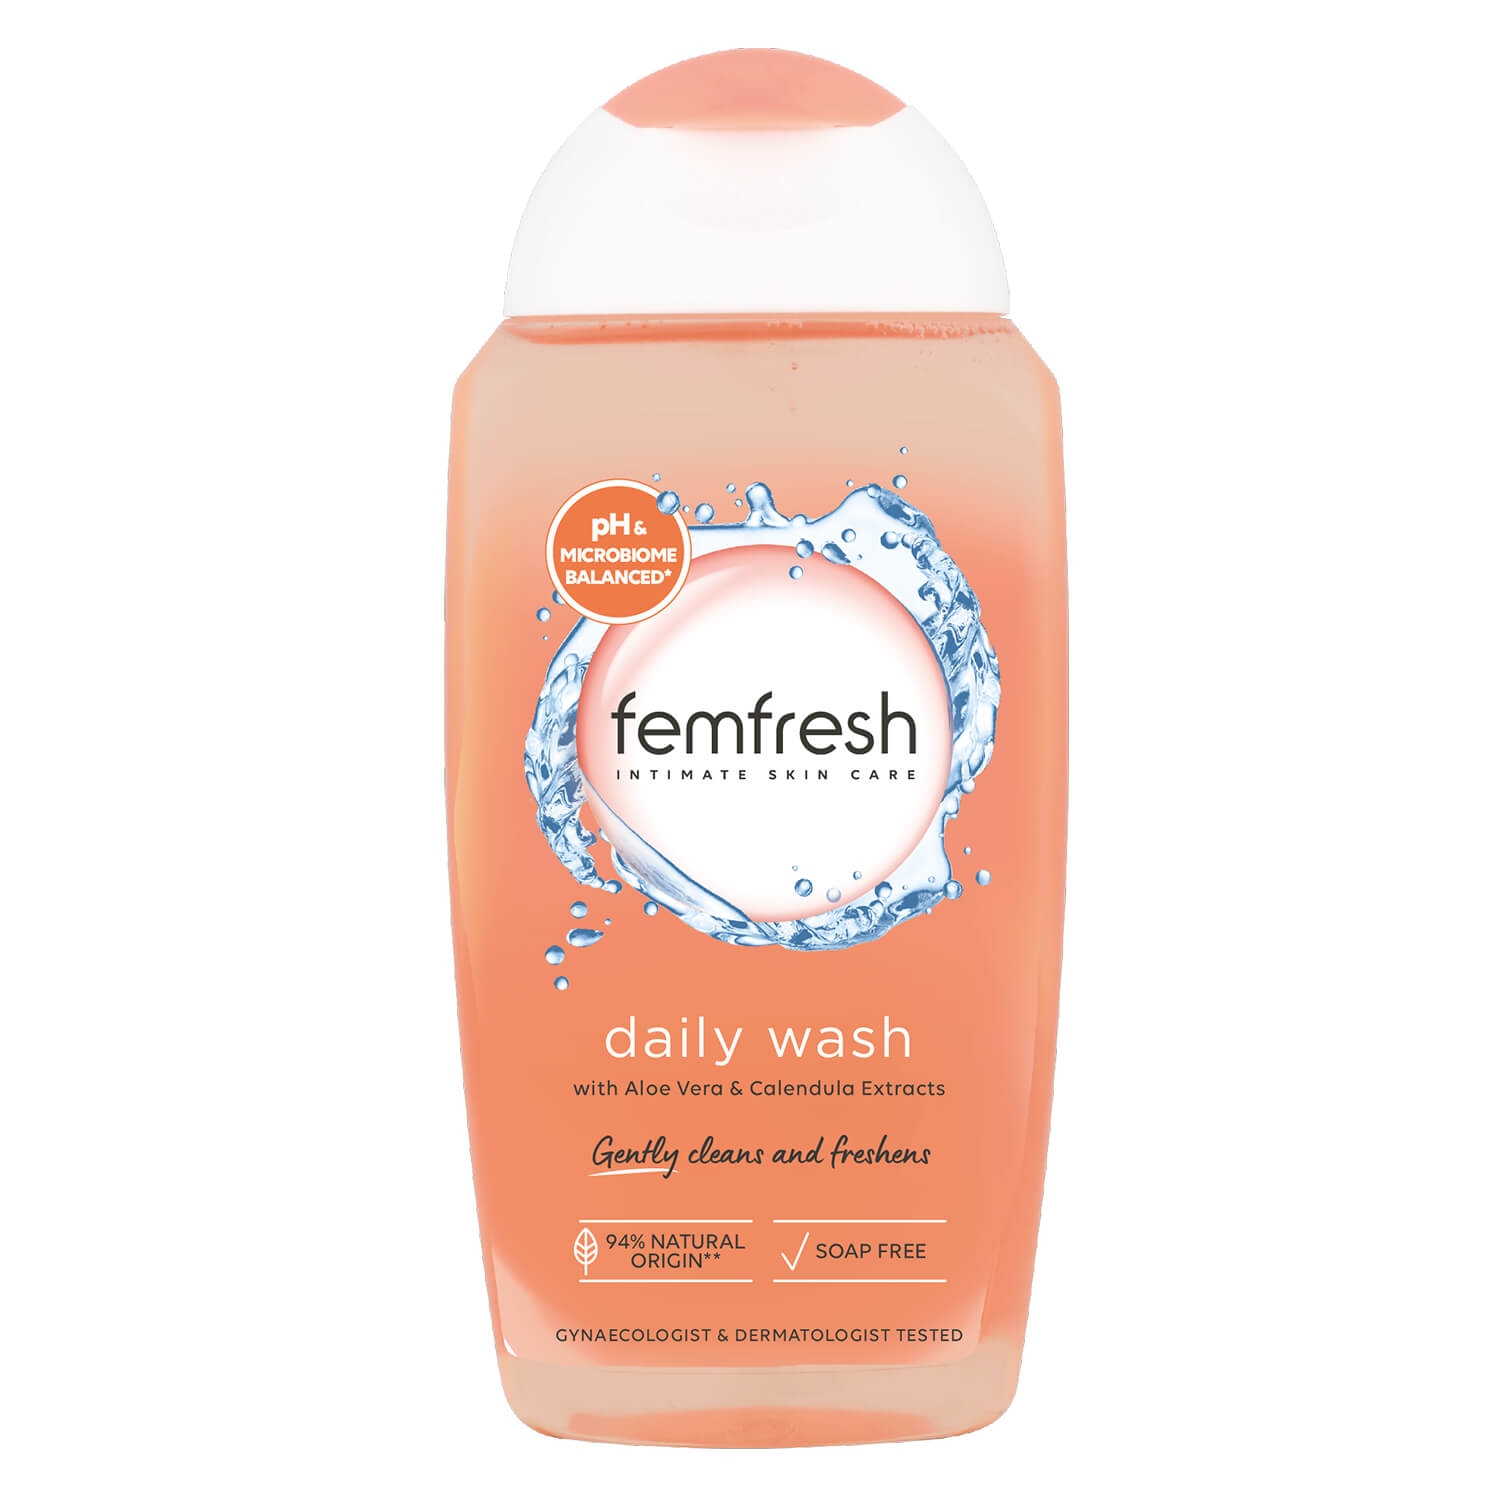 Produktbild von femfresh - daily intimate wash